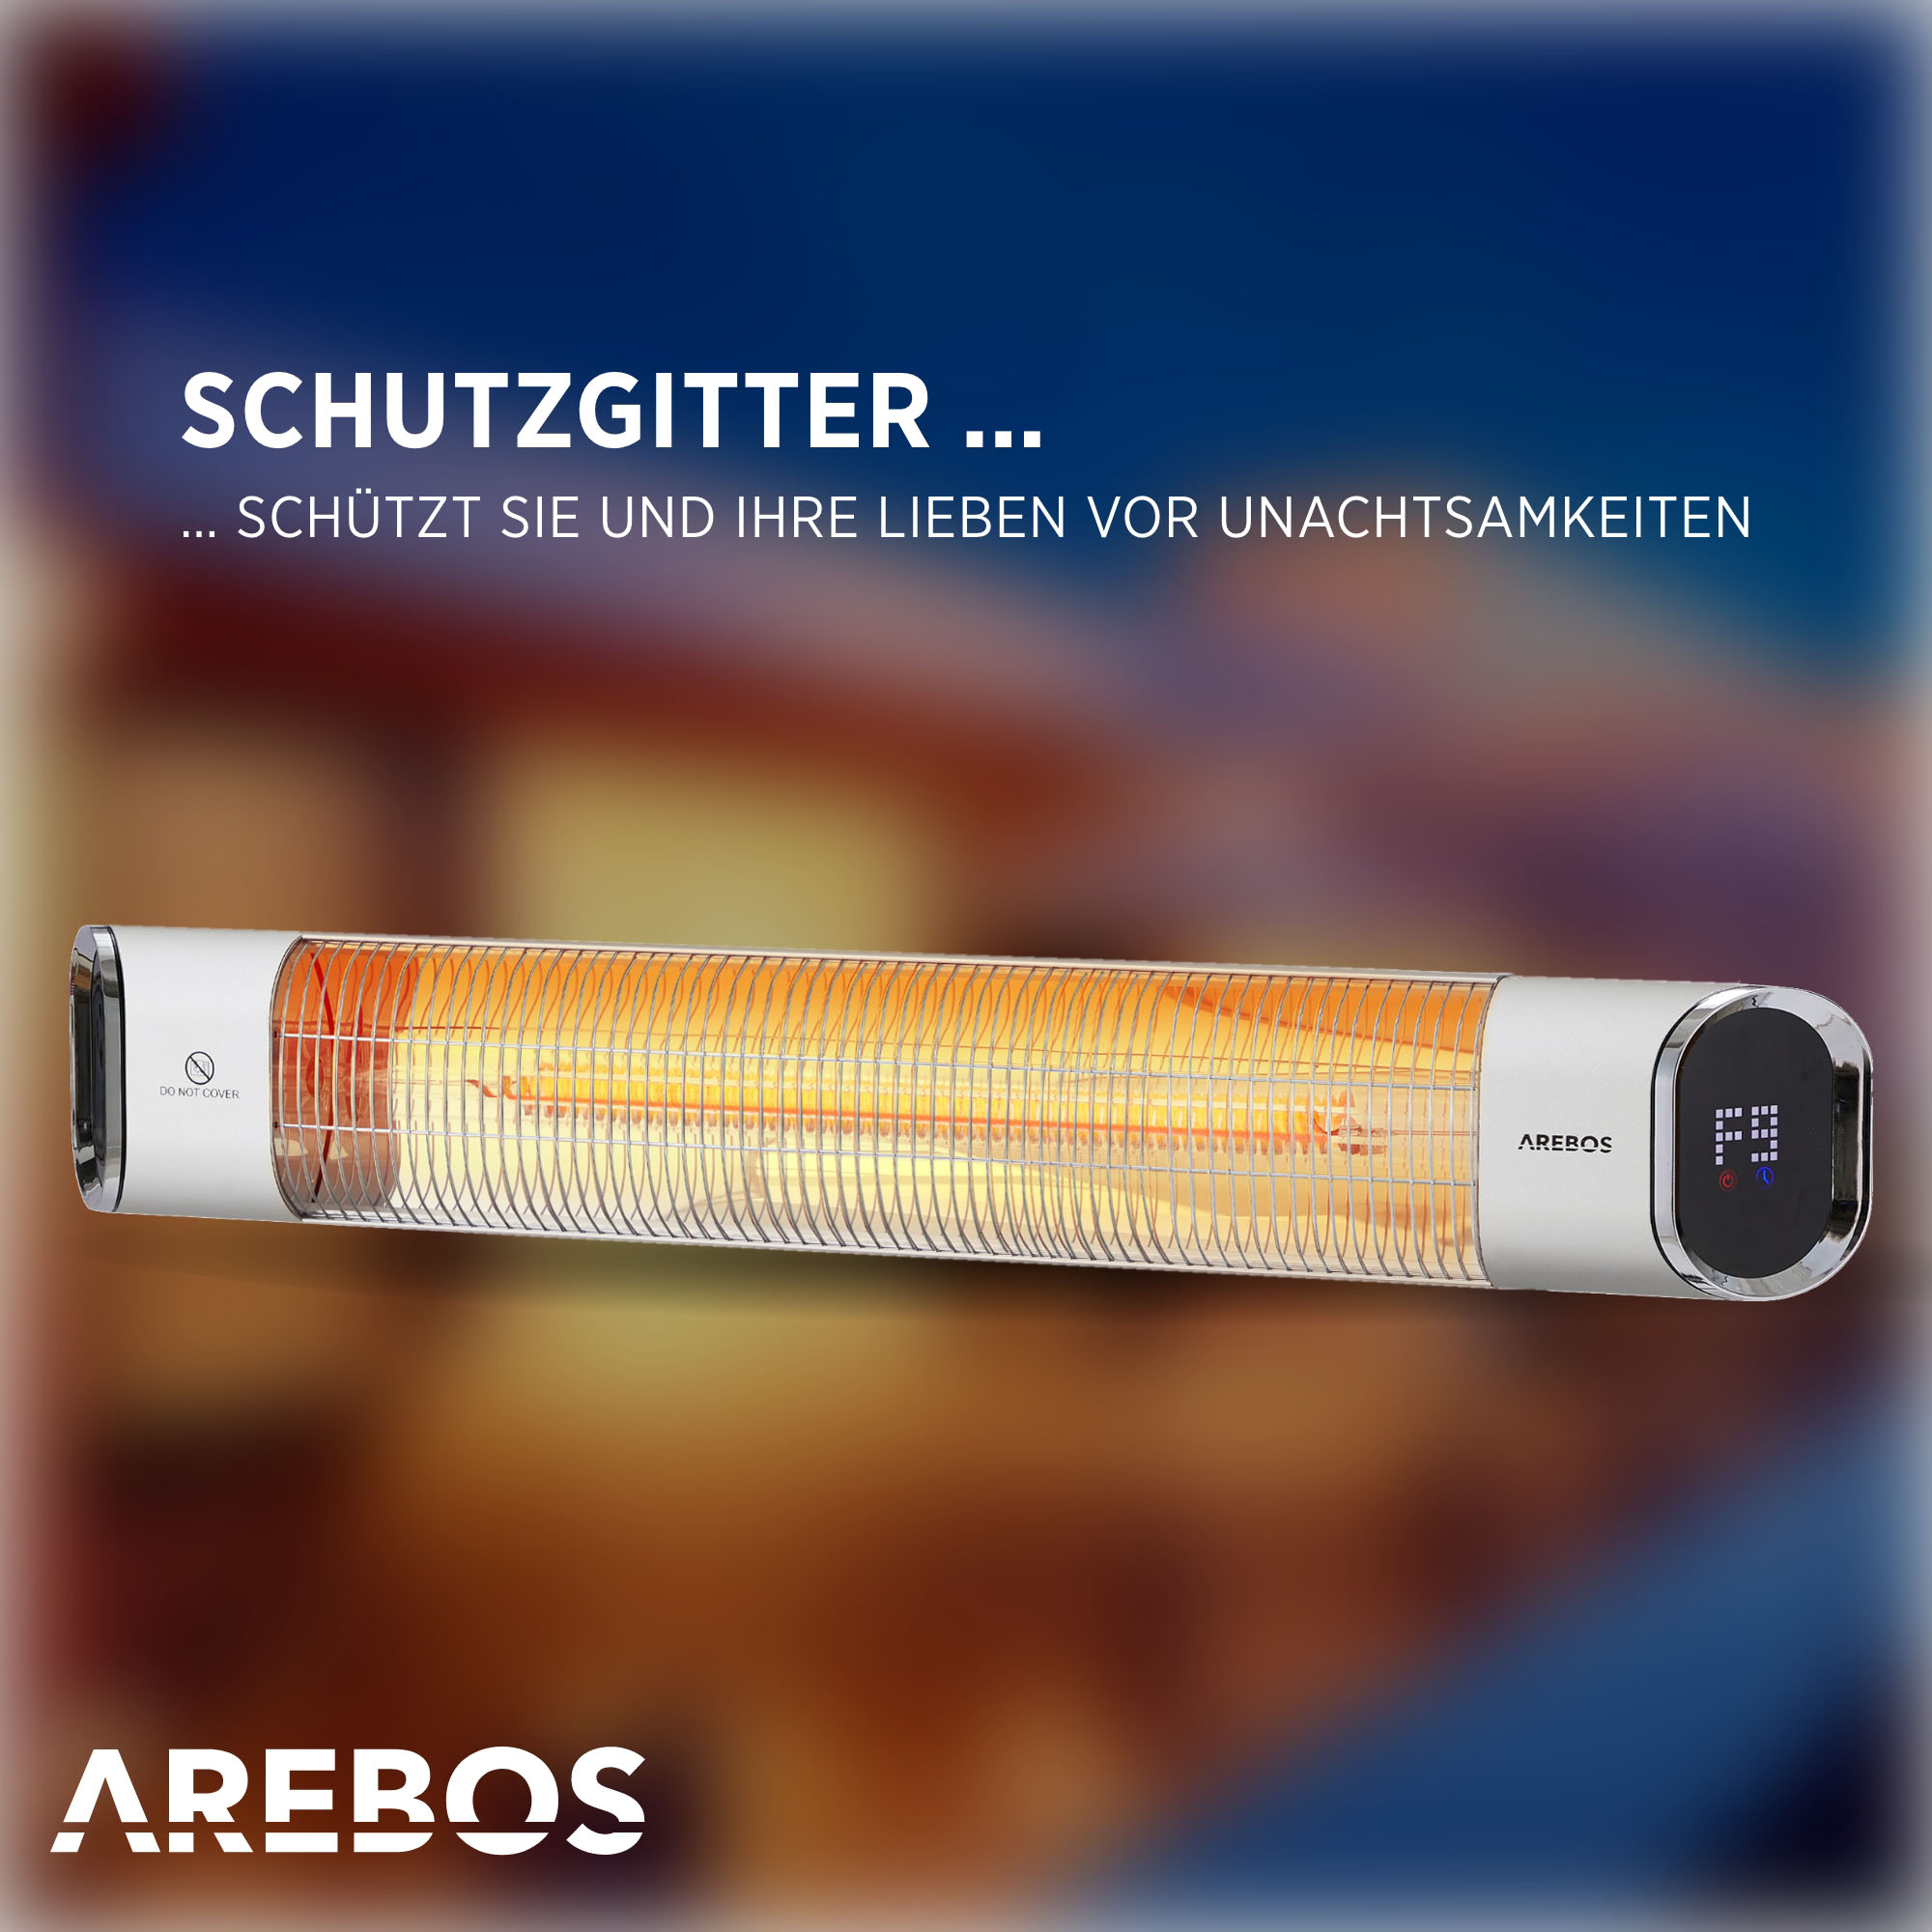 AREBOS mit Fernbedienung inkl. 60° silber Heizstufen Neigung | | Infrarot 2 Montagematerial Heizstrahler